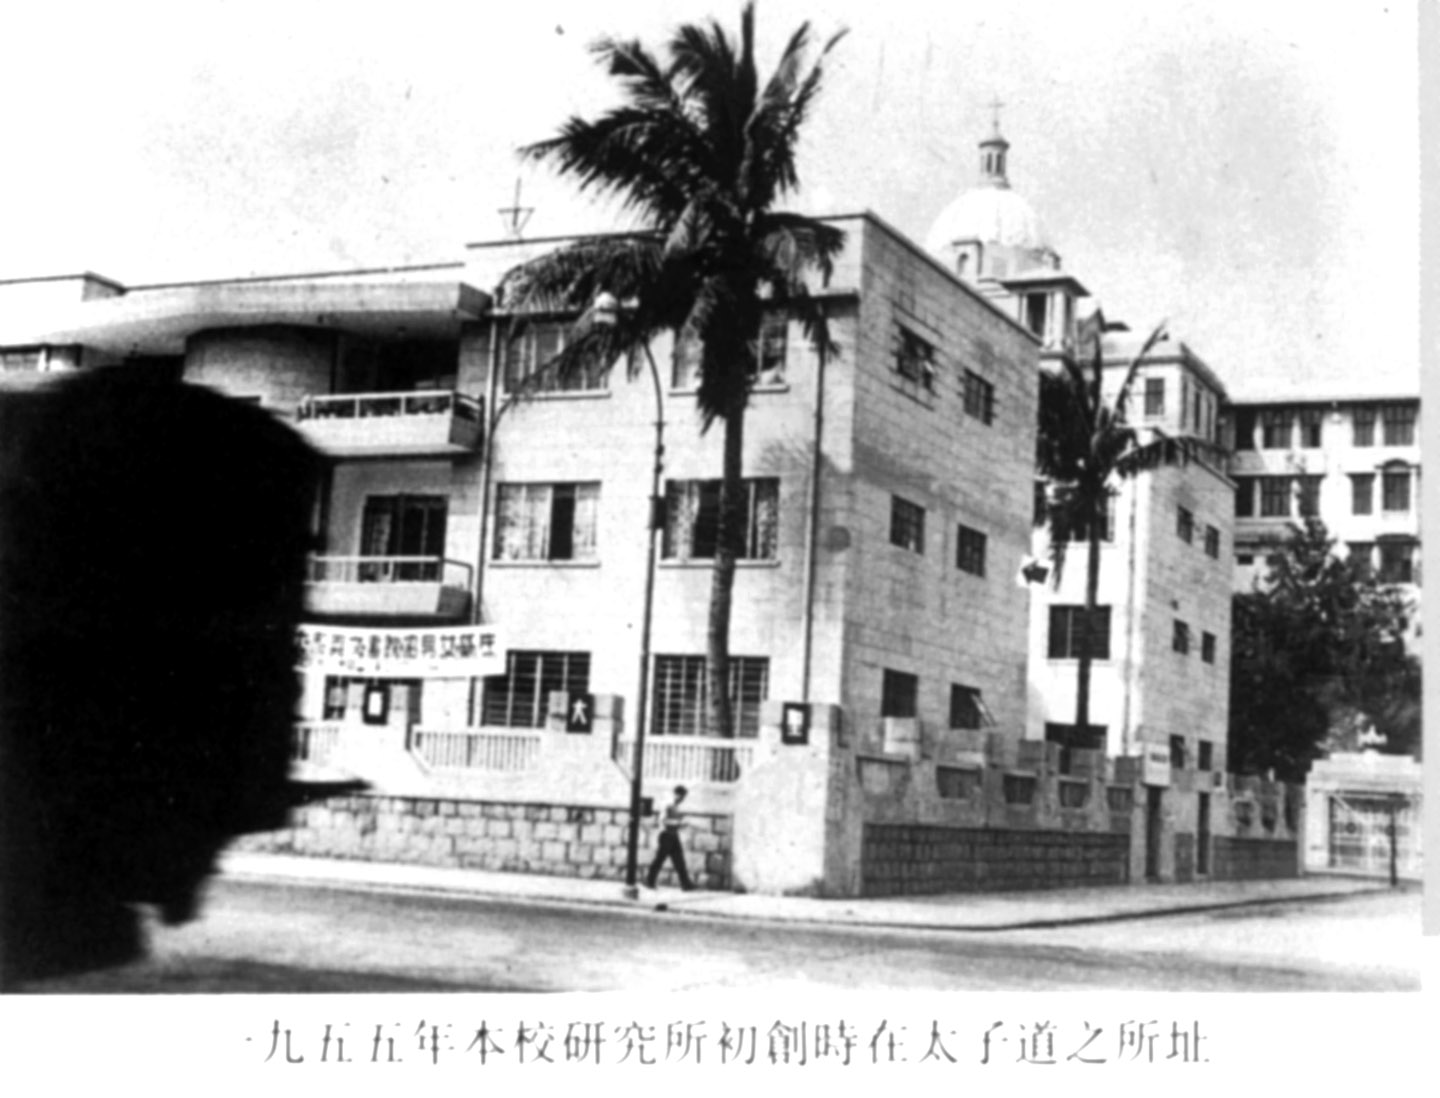 新亚研究所初创时在太子道之校舍(1955)